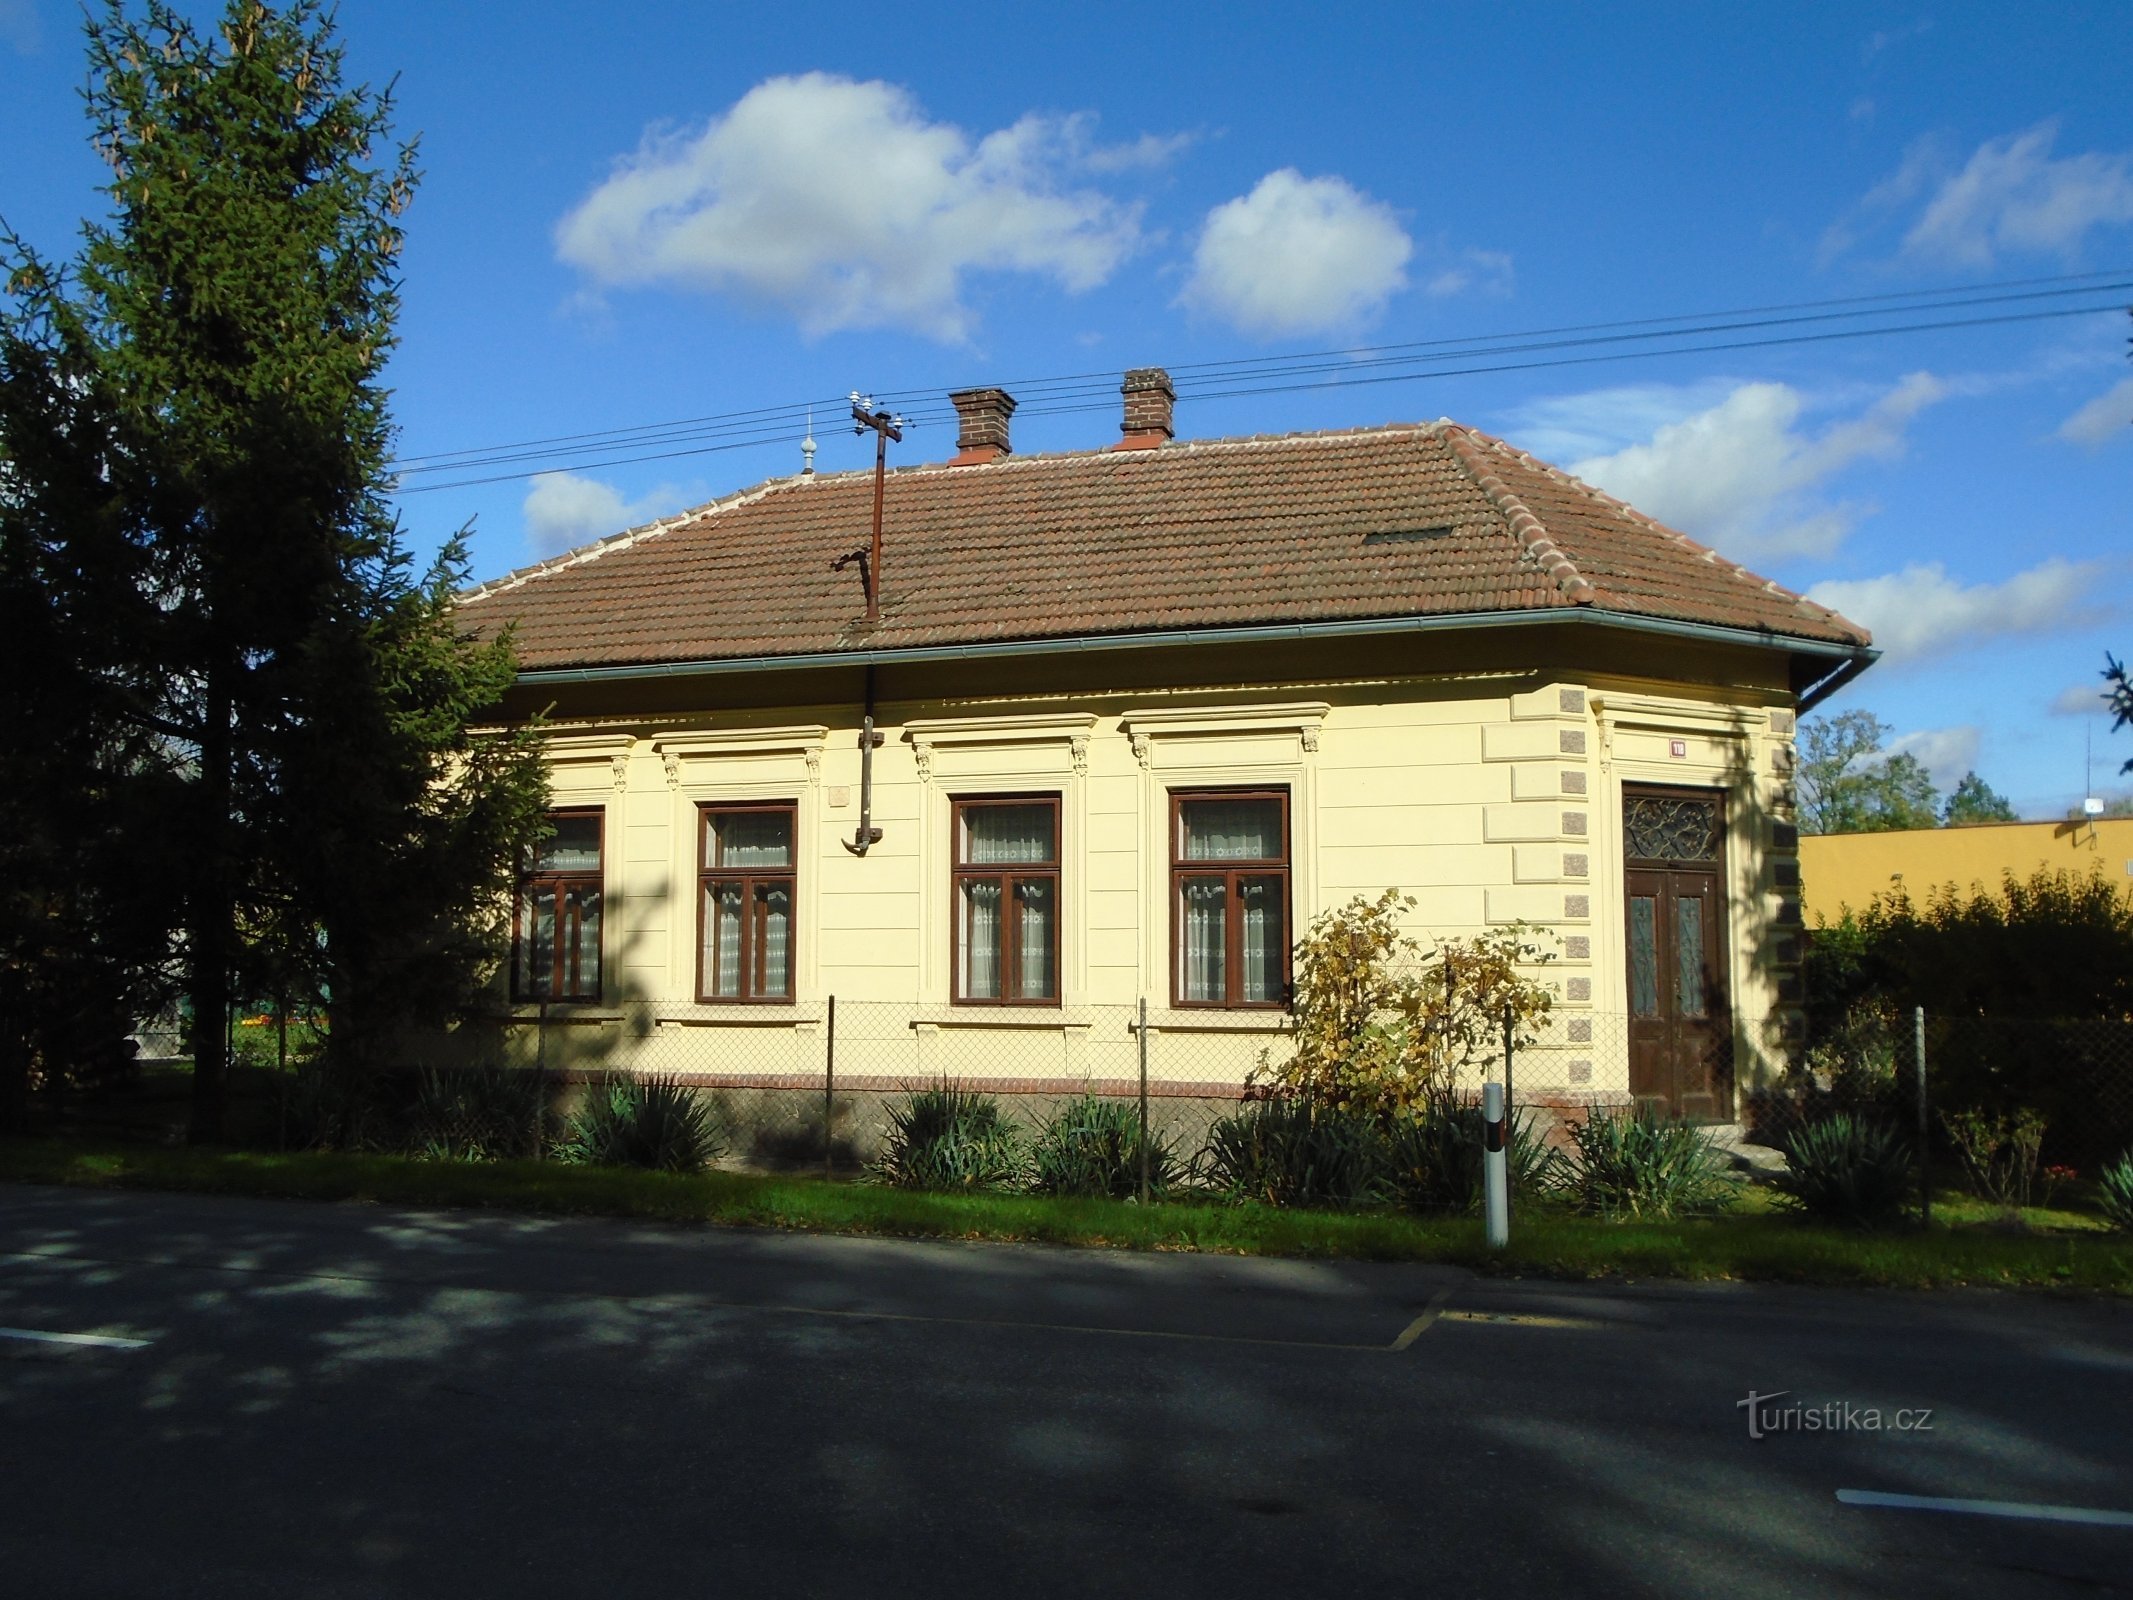 Hradecká nr. 118 (Opatovice nad Labem)